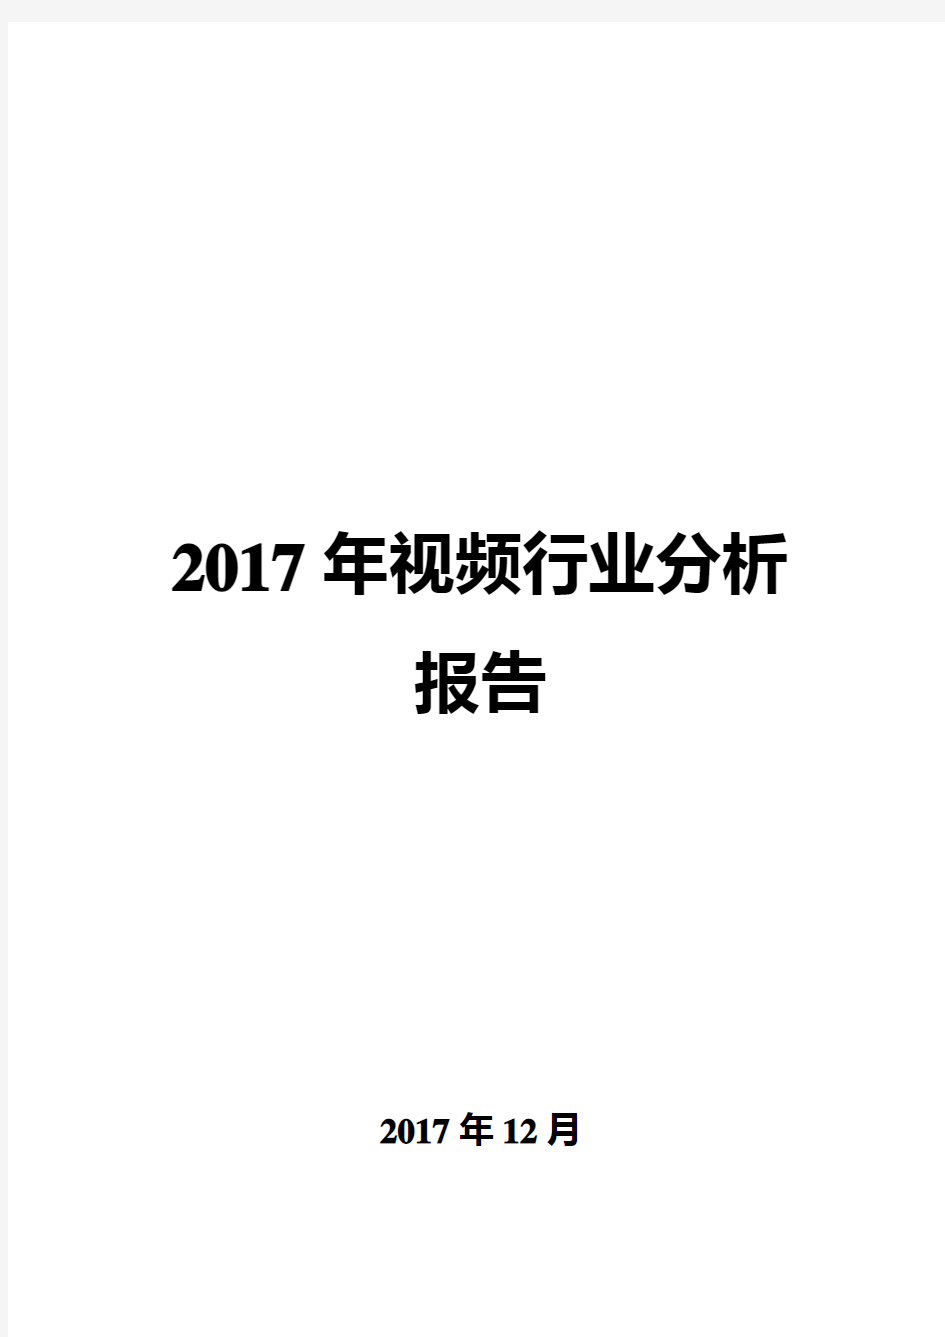 2017年视频行业分析报告